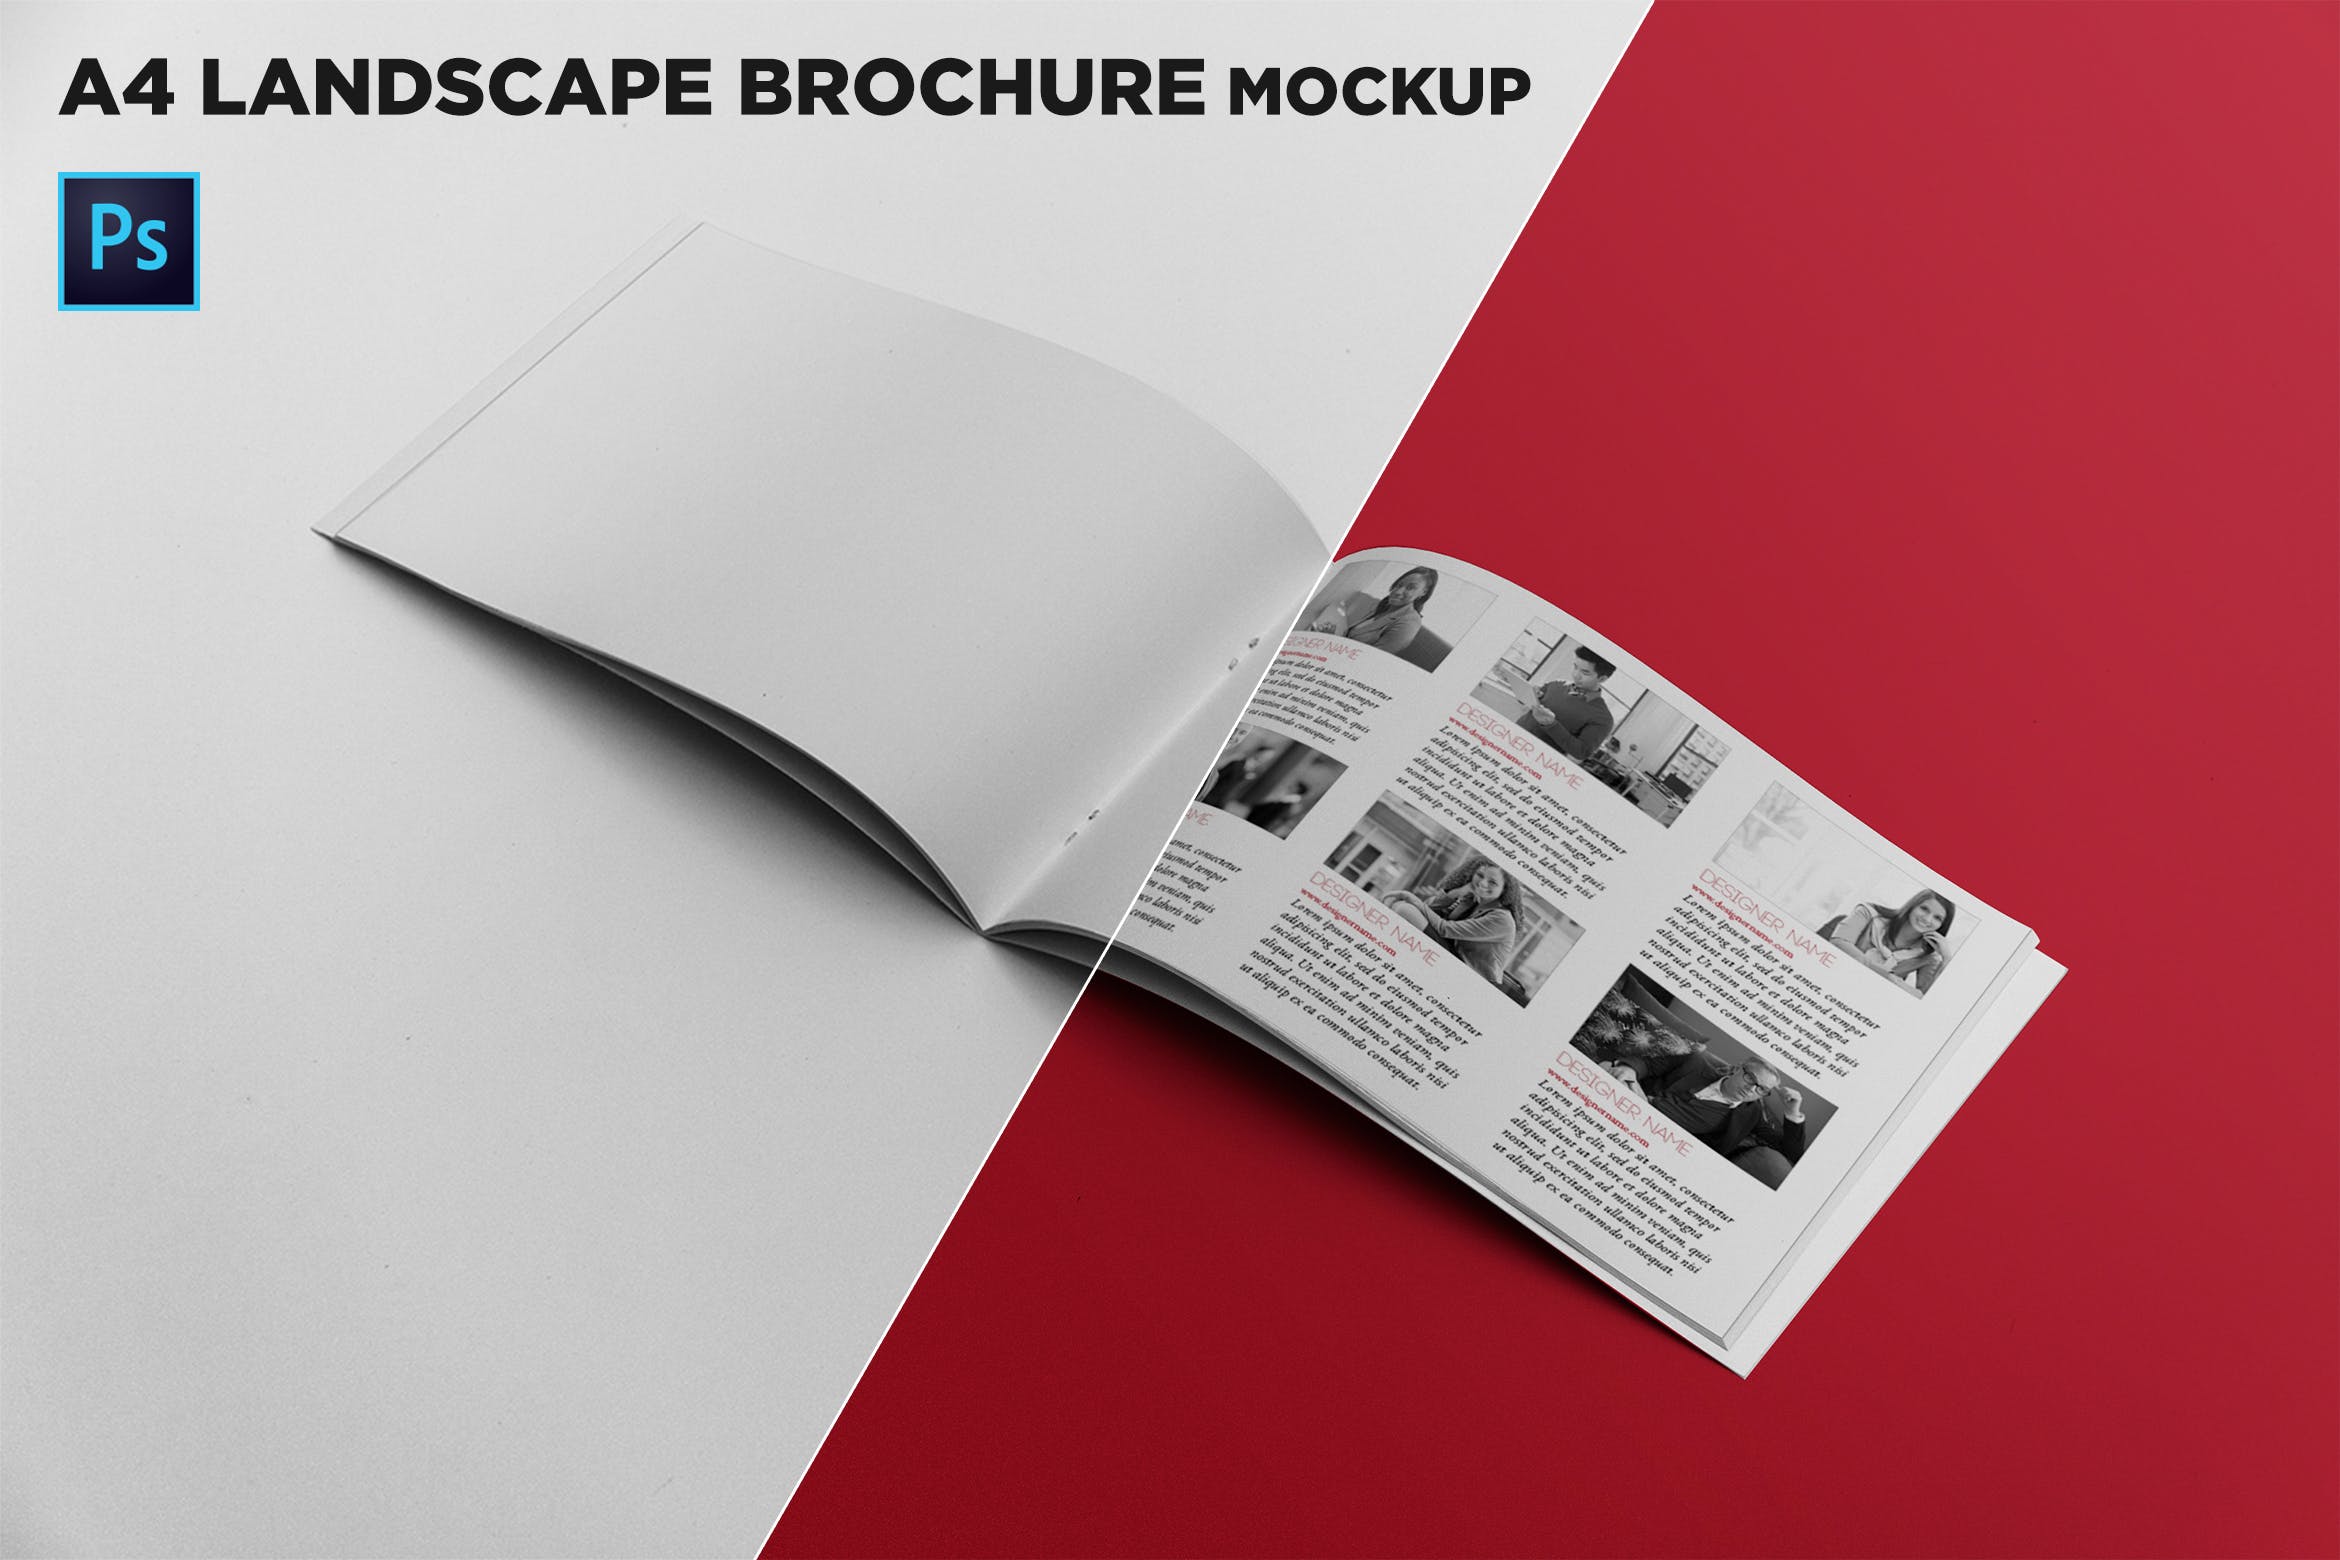 宣传画册/企业画册内页版式设计图样机16设计网精选 Open Landscape Brochure Mockup插图